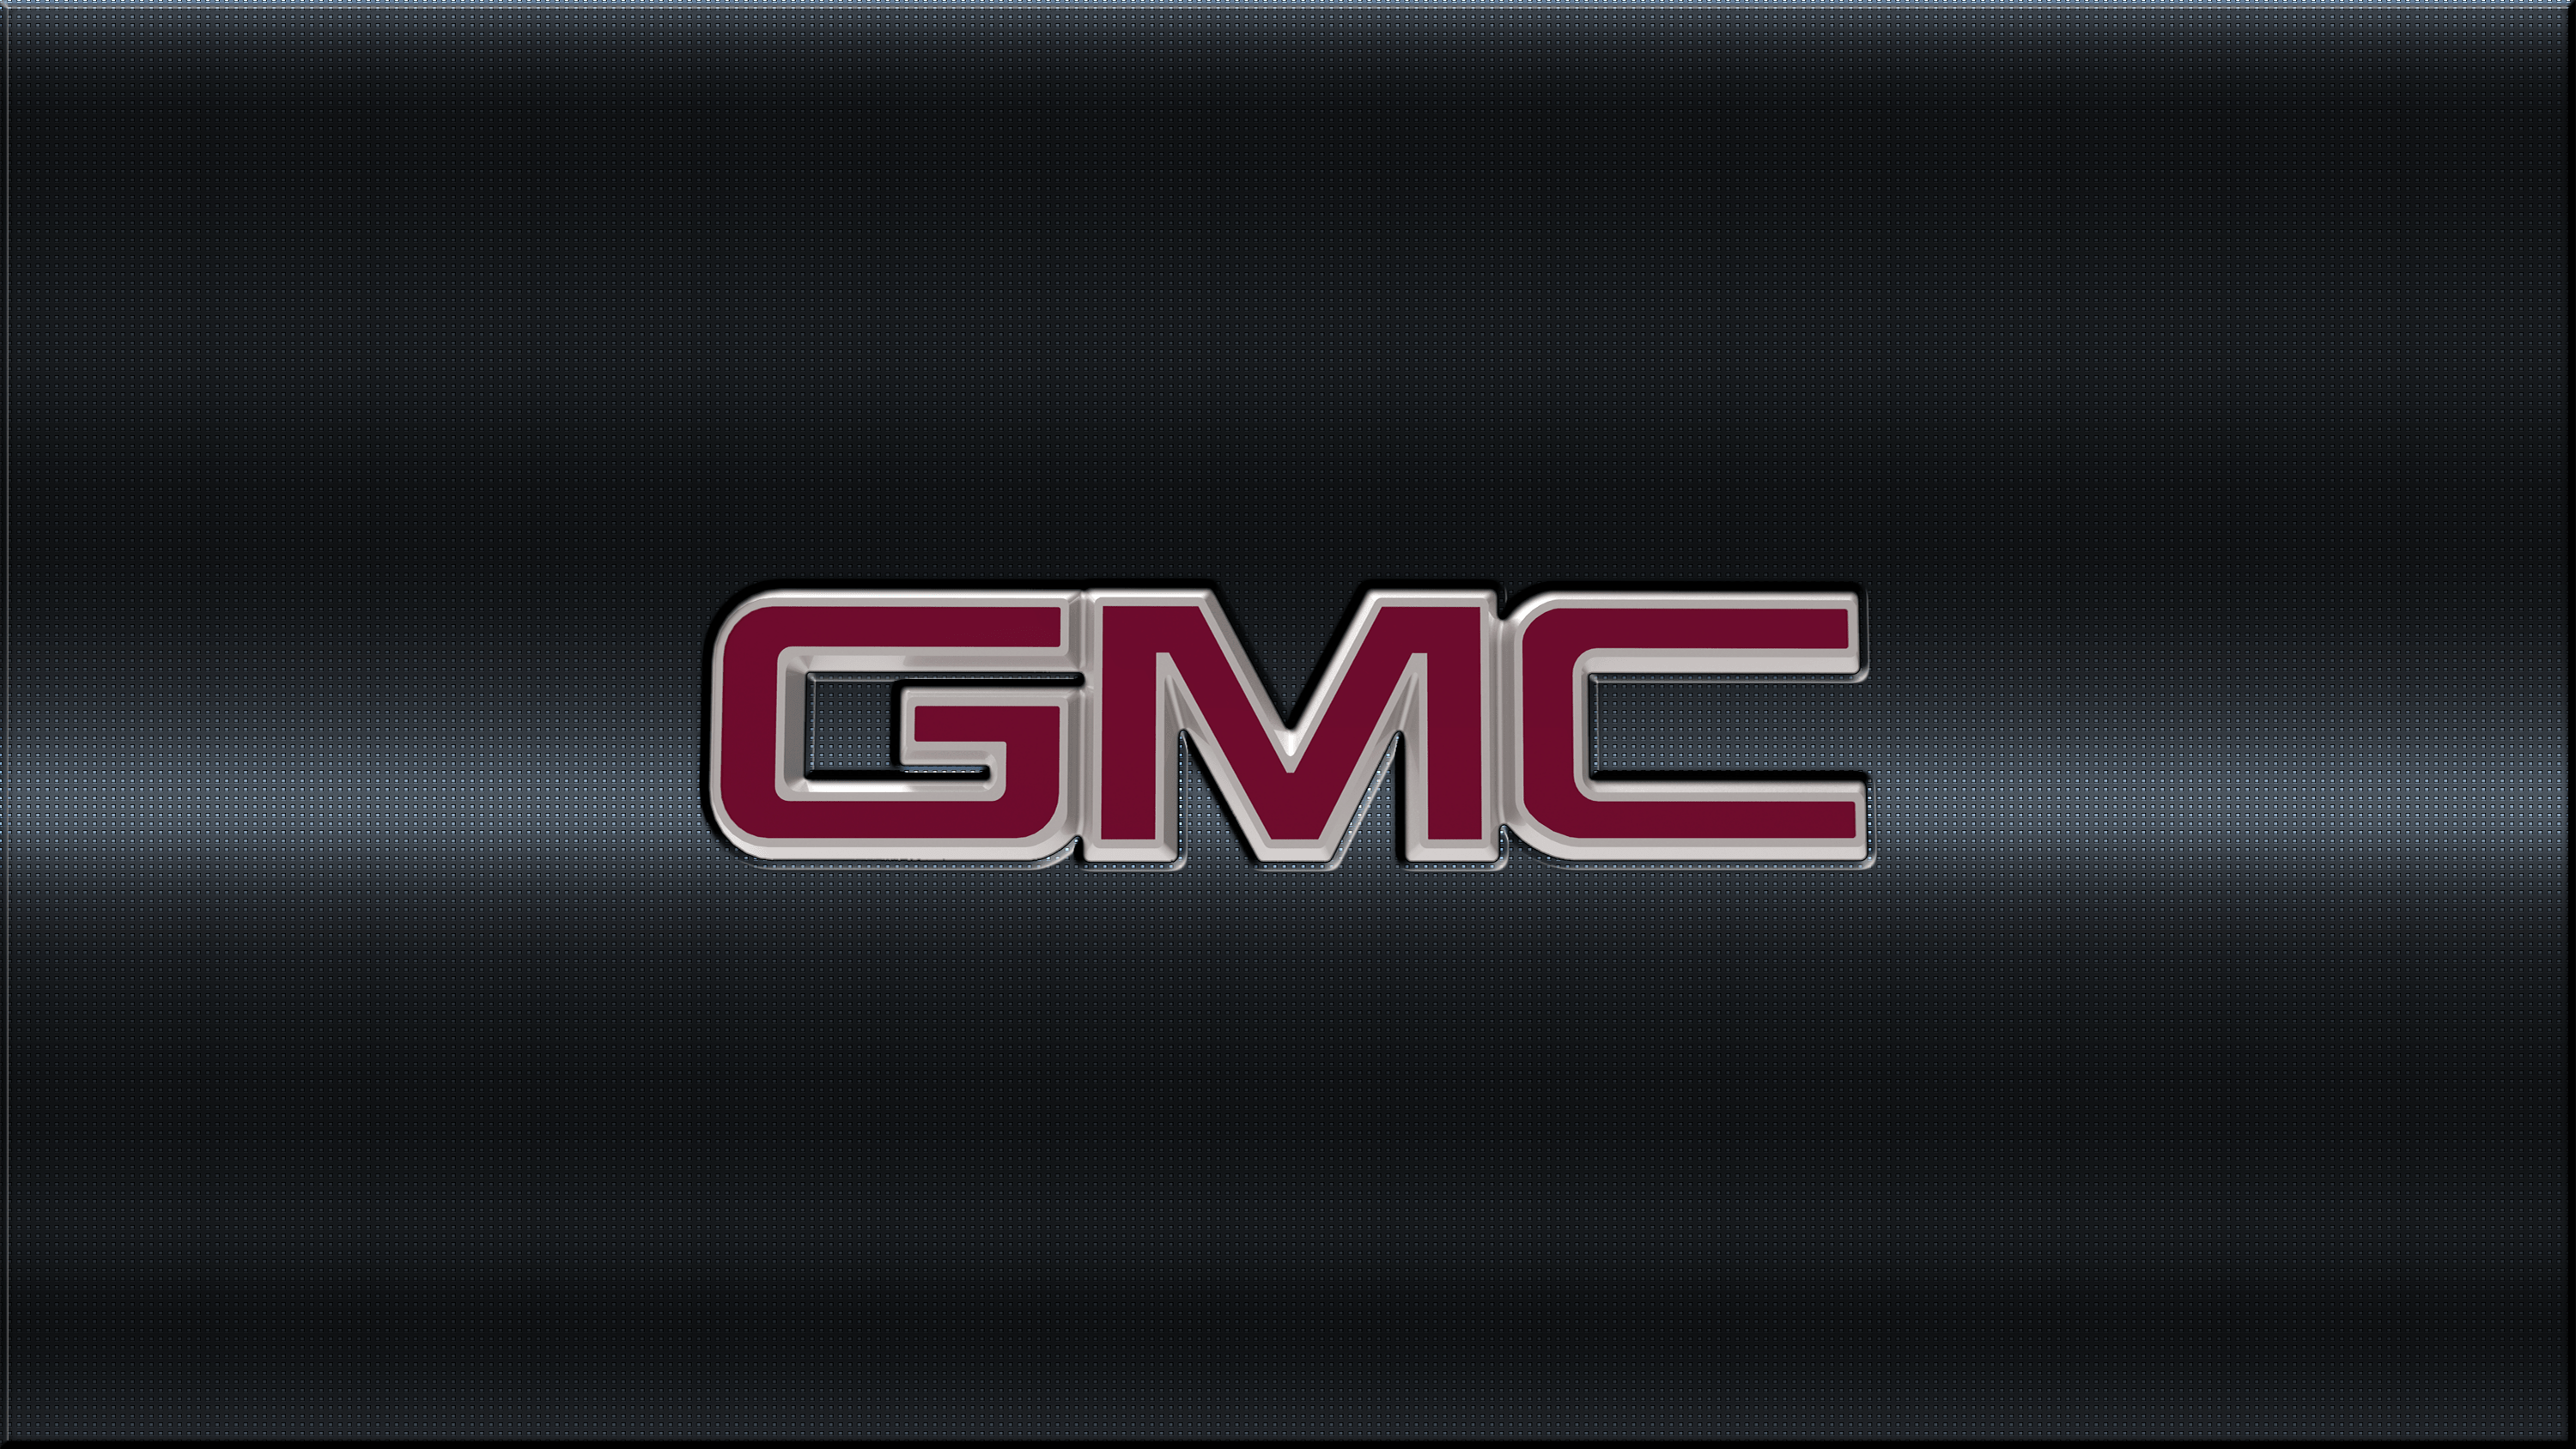 gama-automoviles-gmc-glp-autogas